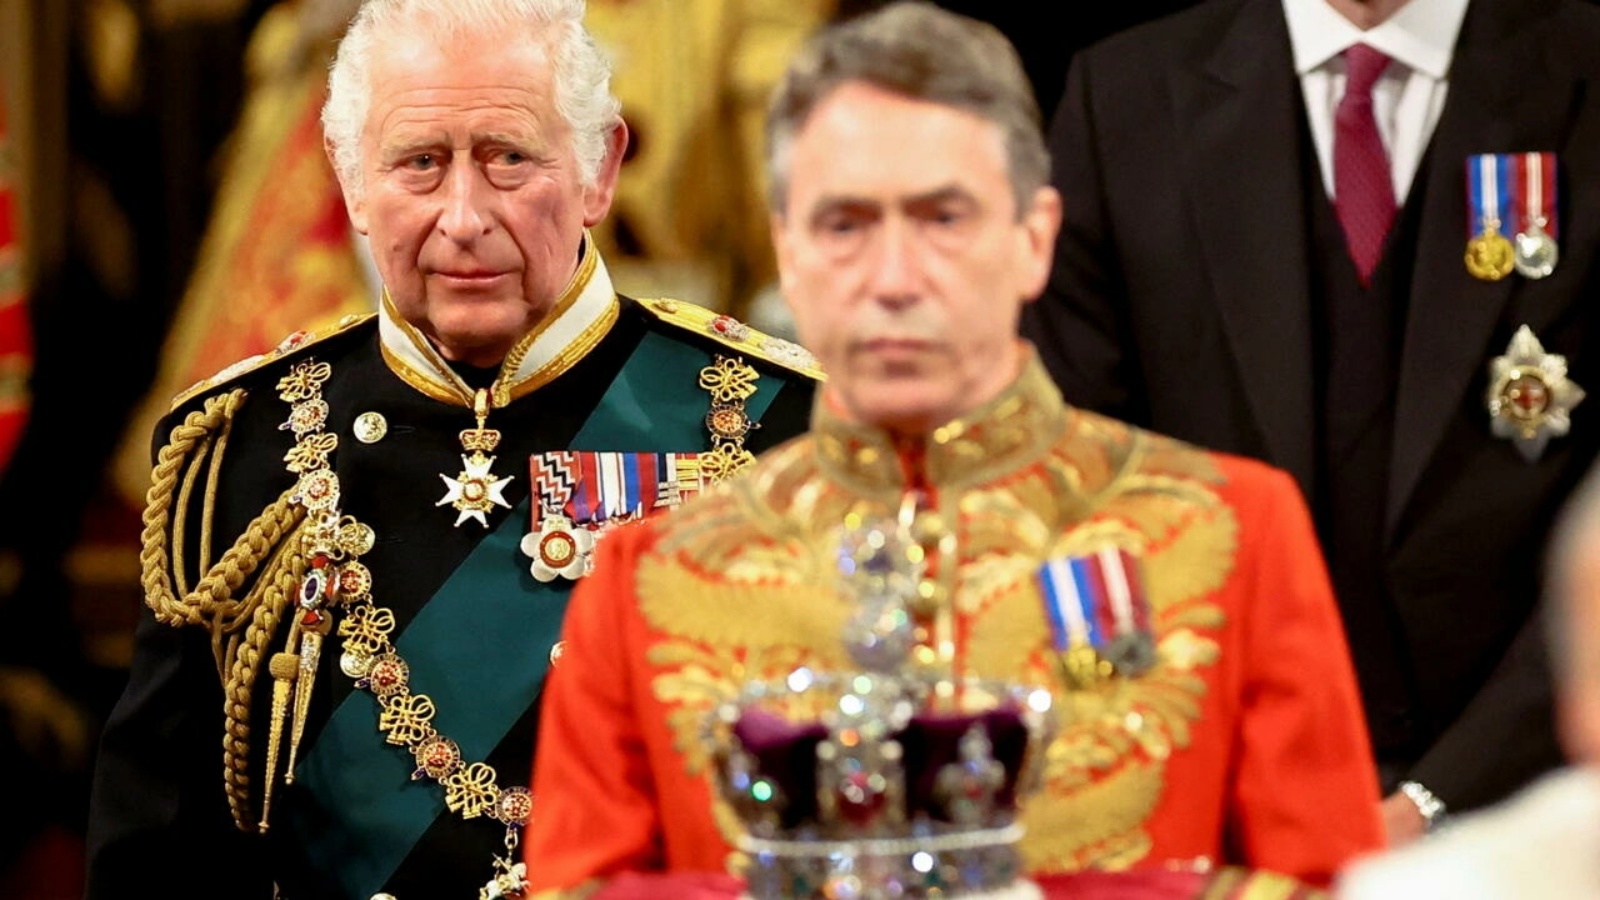 ولي العهد البريطاني الأمير تشارلز - الذي أصبح الملك تشارلز الثالث - في افتتاح دورة البرلمان في لندن في 10 مايو 2022 